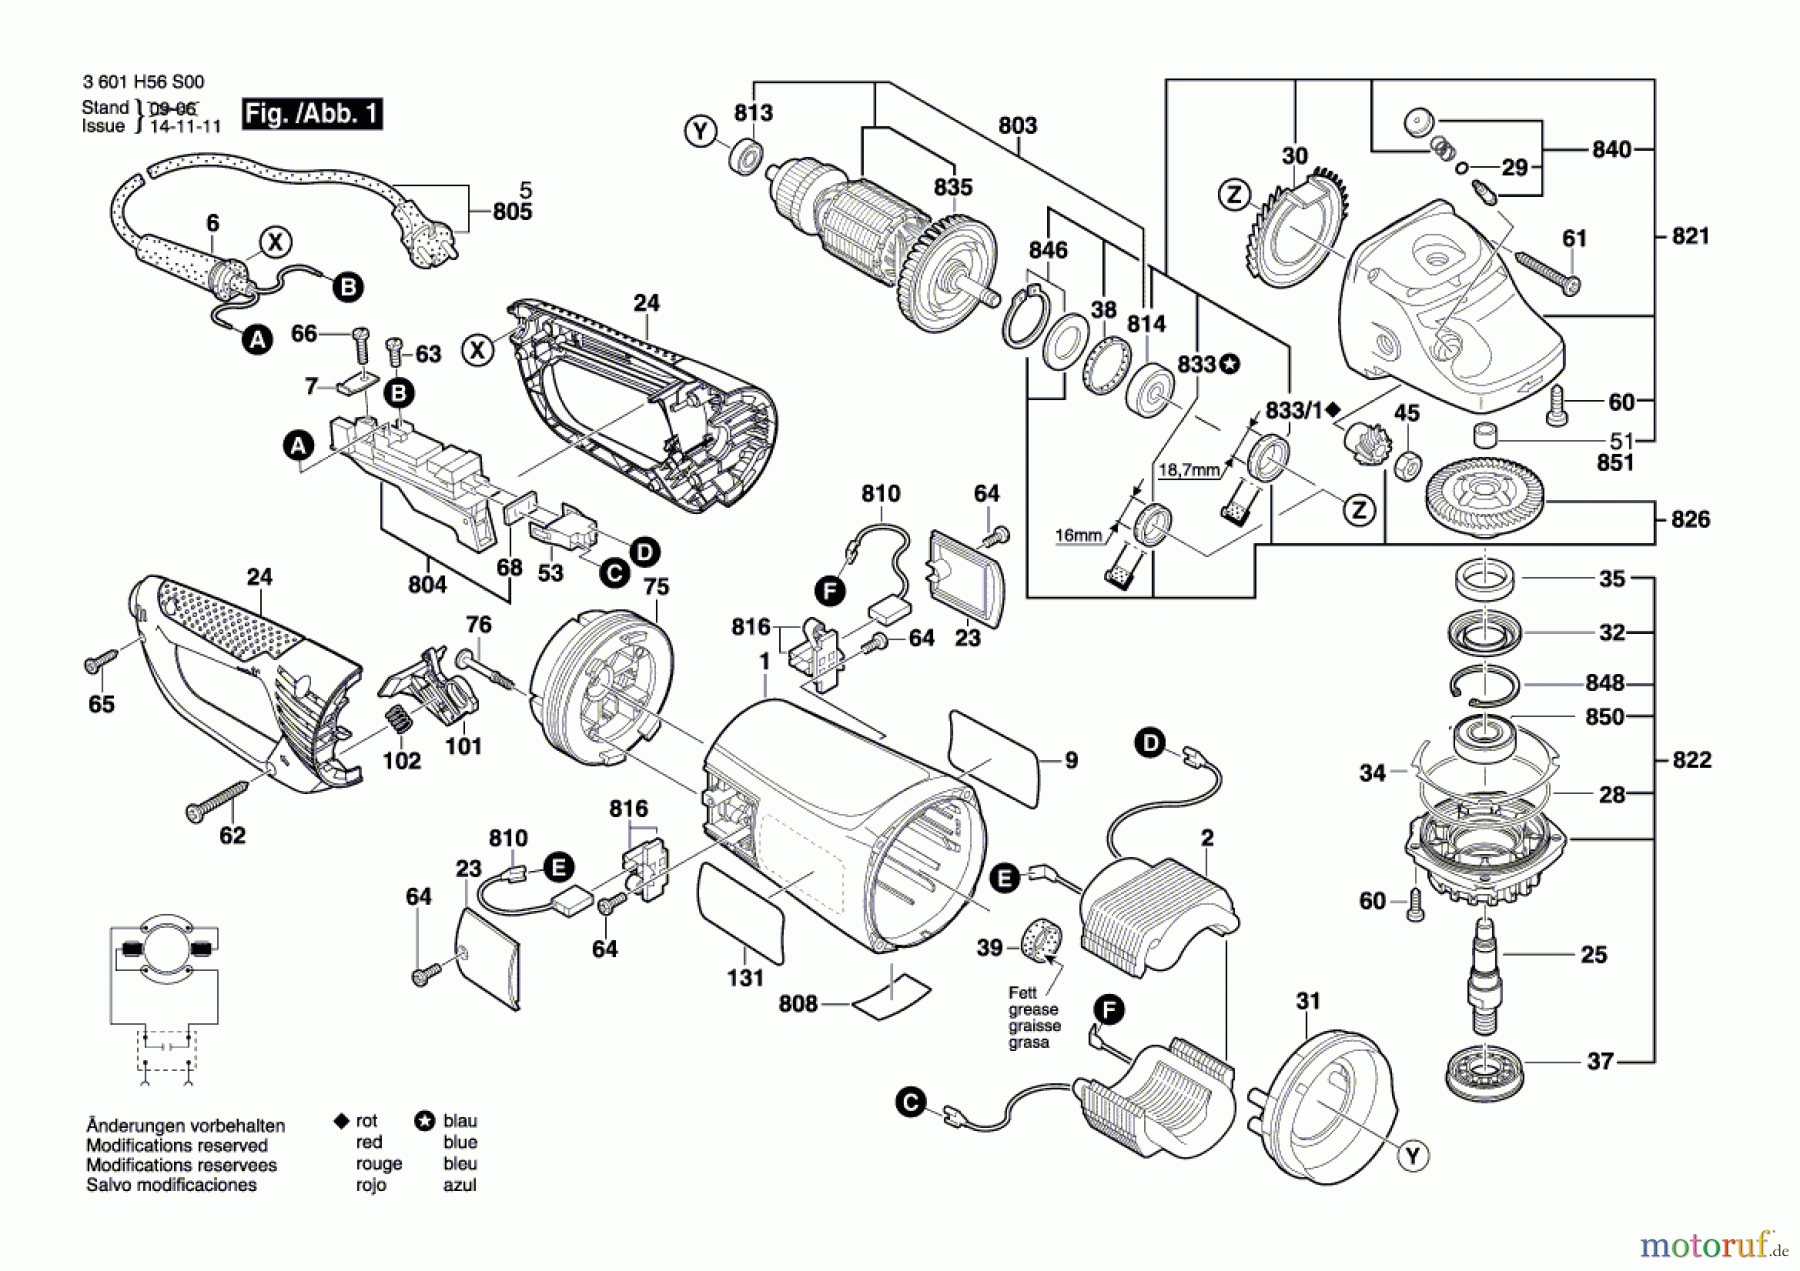  Bosch Werkzeug Winkelschleifer GWS 26-230 JBV Seite 1